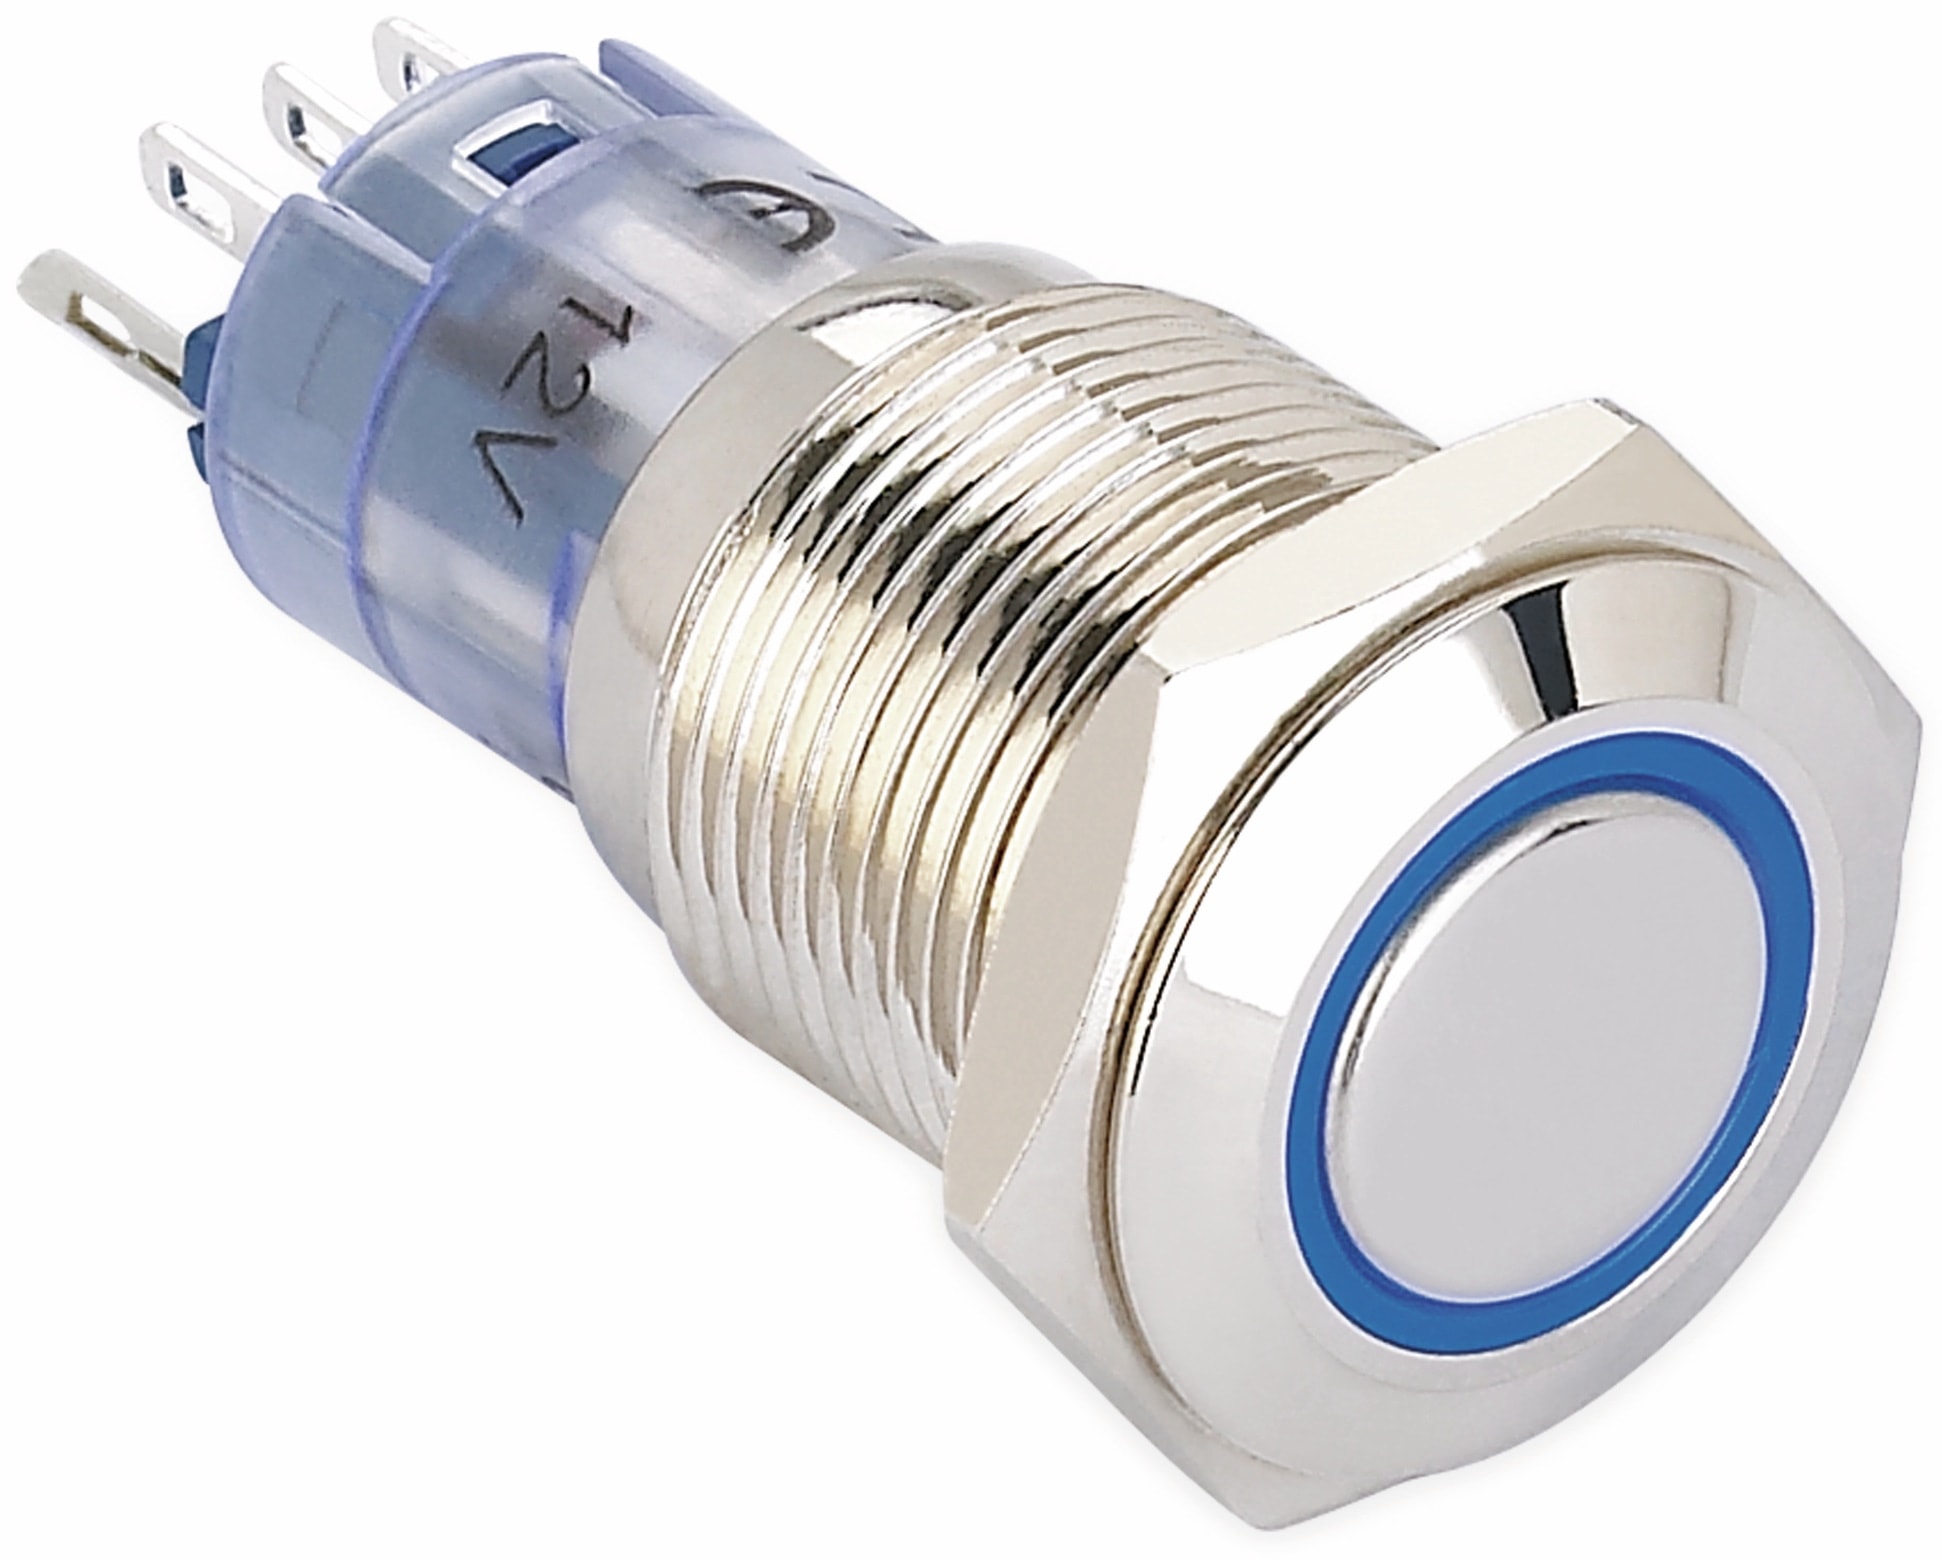 ONPOW Schalter, 24 V/DC, 1x Off/(On), Beleuchtung blau, Lötanschluss, flach rund, Messing, 16 mm